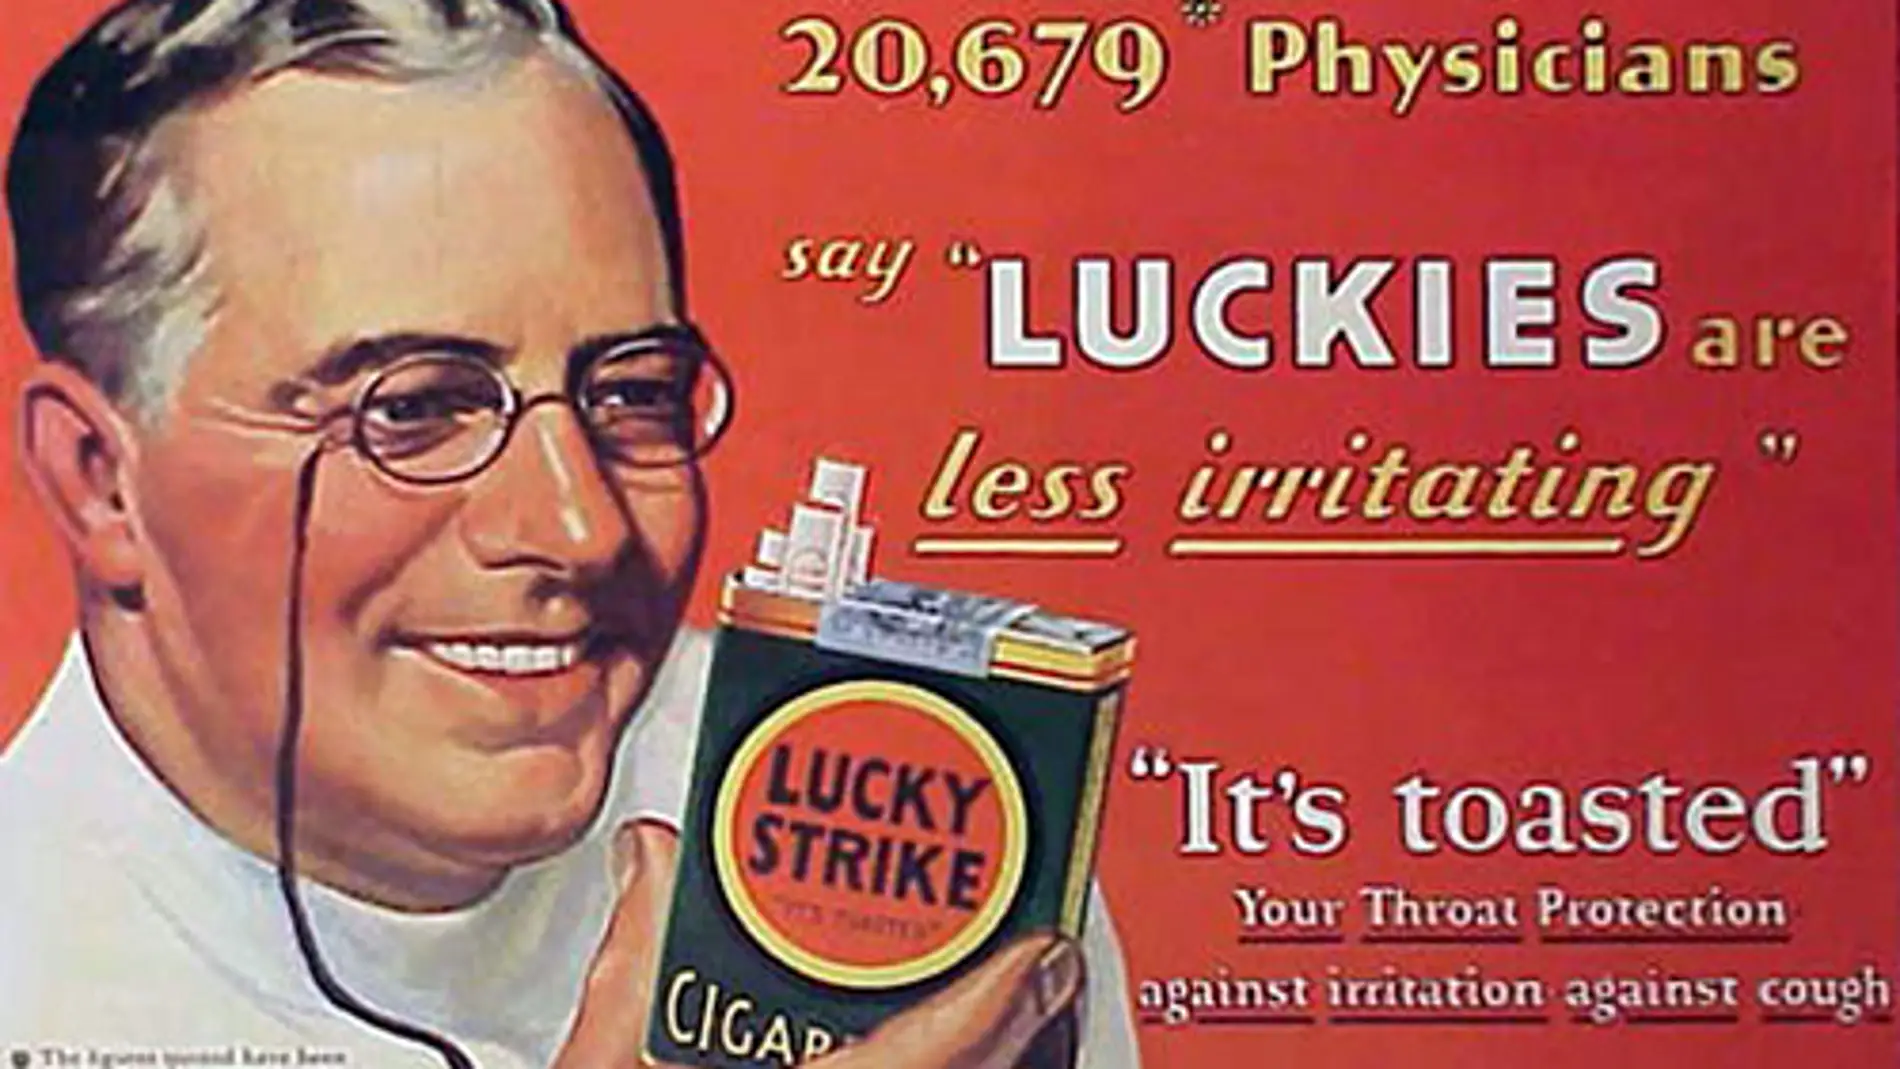 Una época no tan lejana: un médico anunciando tabaco